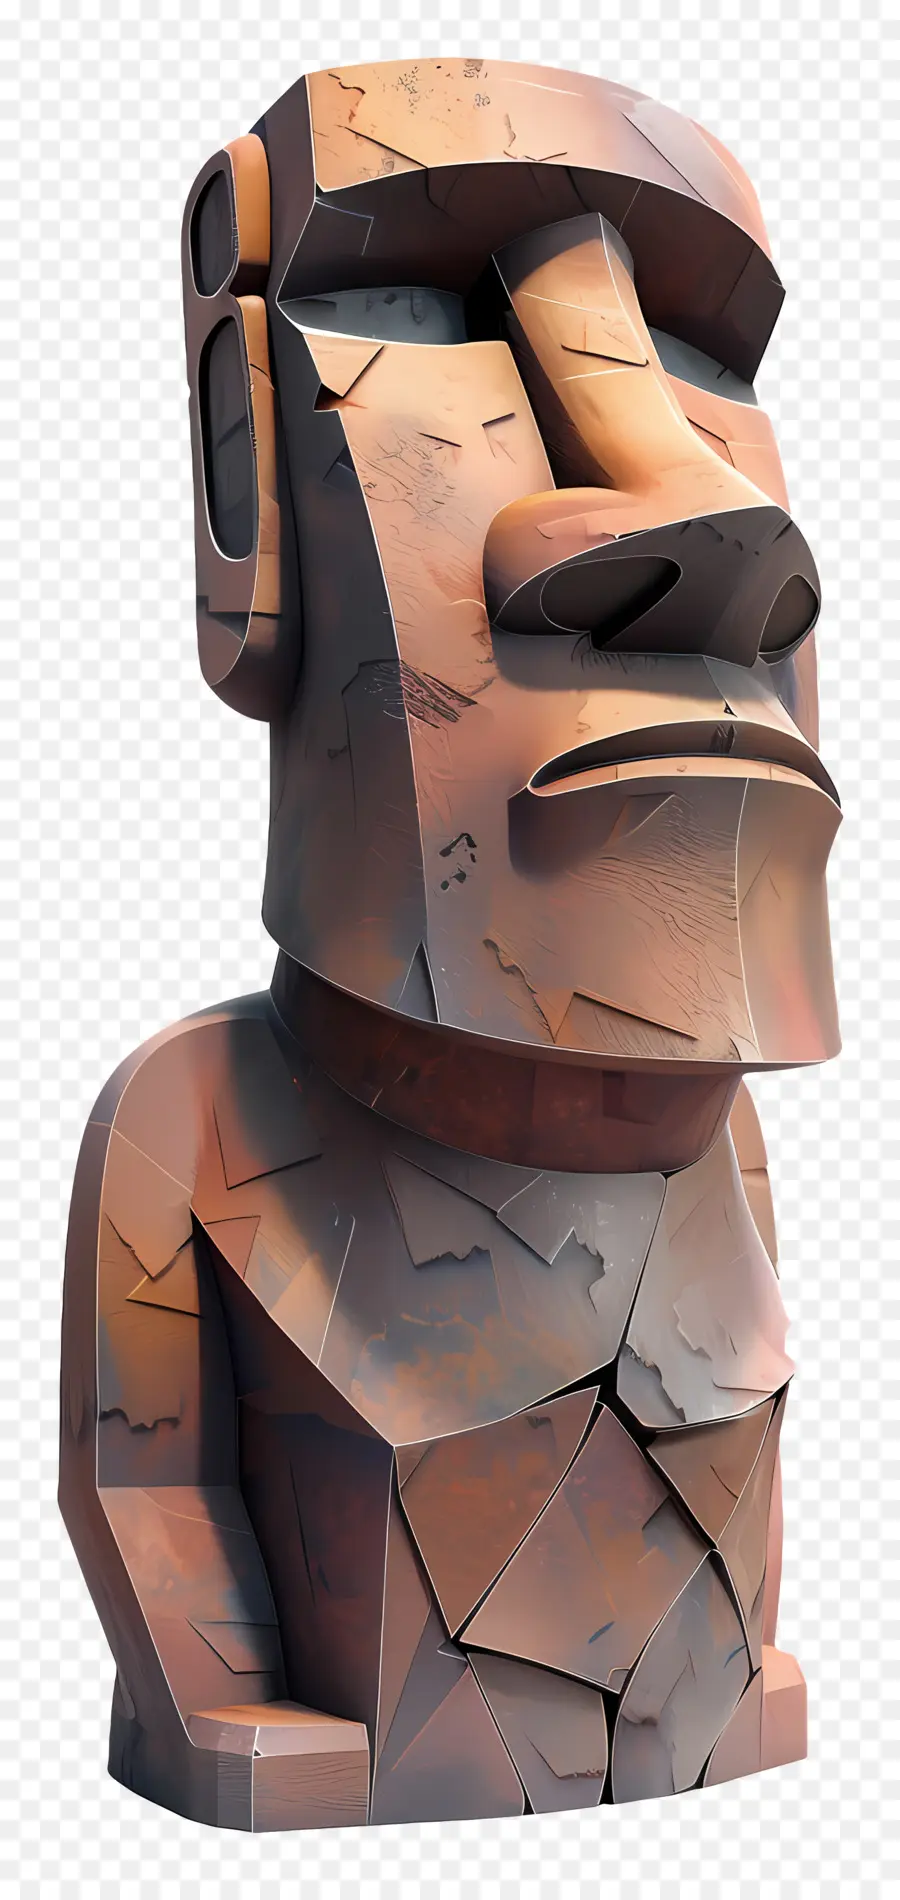 Moai Abstract Statue Human Figur Skulptur Stilisierter Gesichtsstatue Rough Materialkunst - Raue, verwitterte Statue des abstrakten menschlichen Gesichts